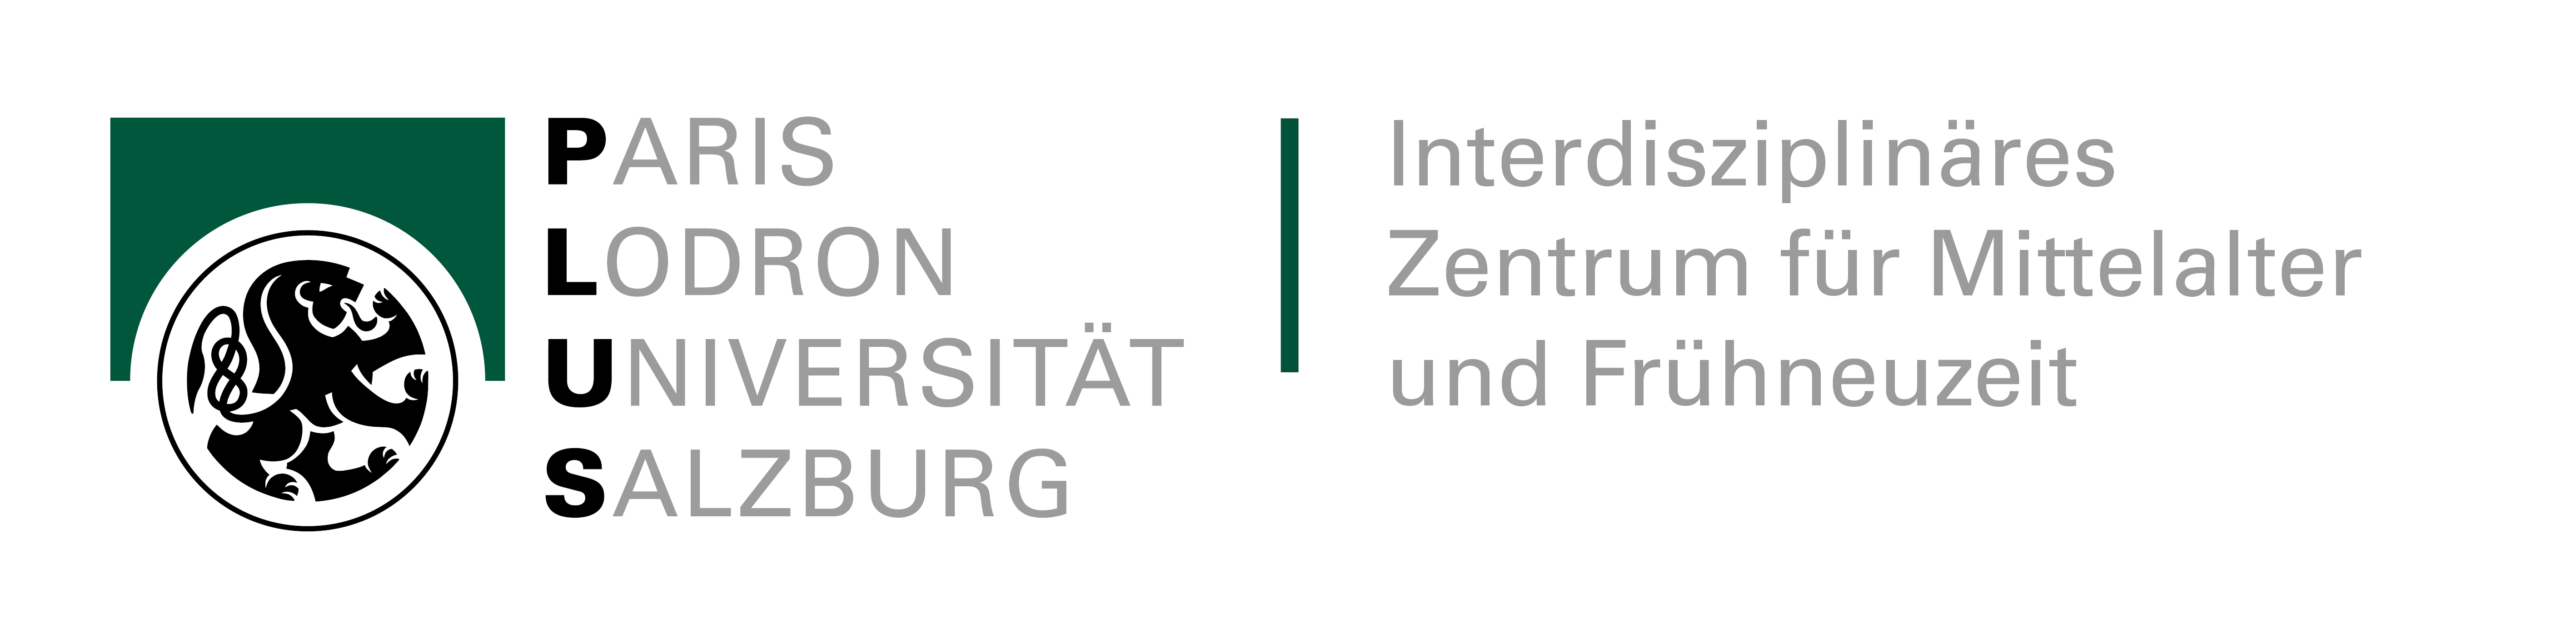 IZMF - Interdisziplinäres Zentrum für Mittelalter und Frühneuzeit